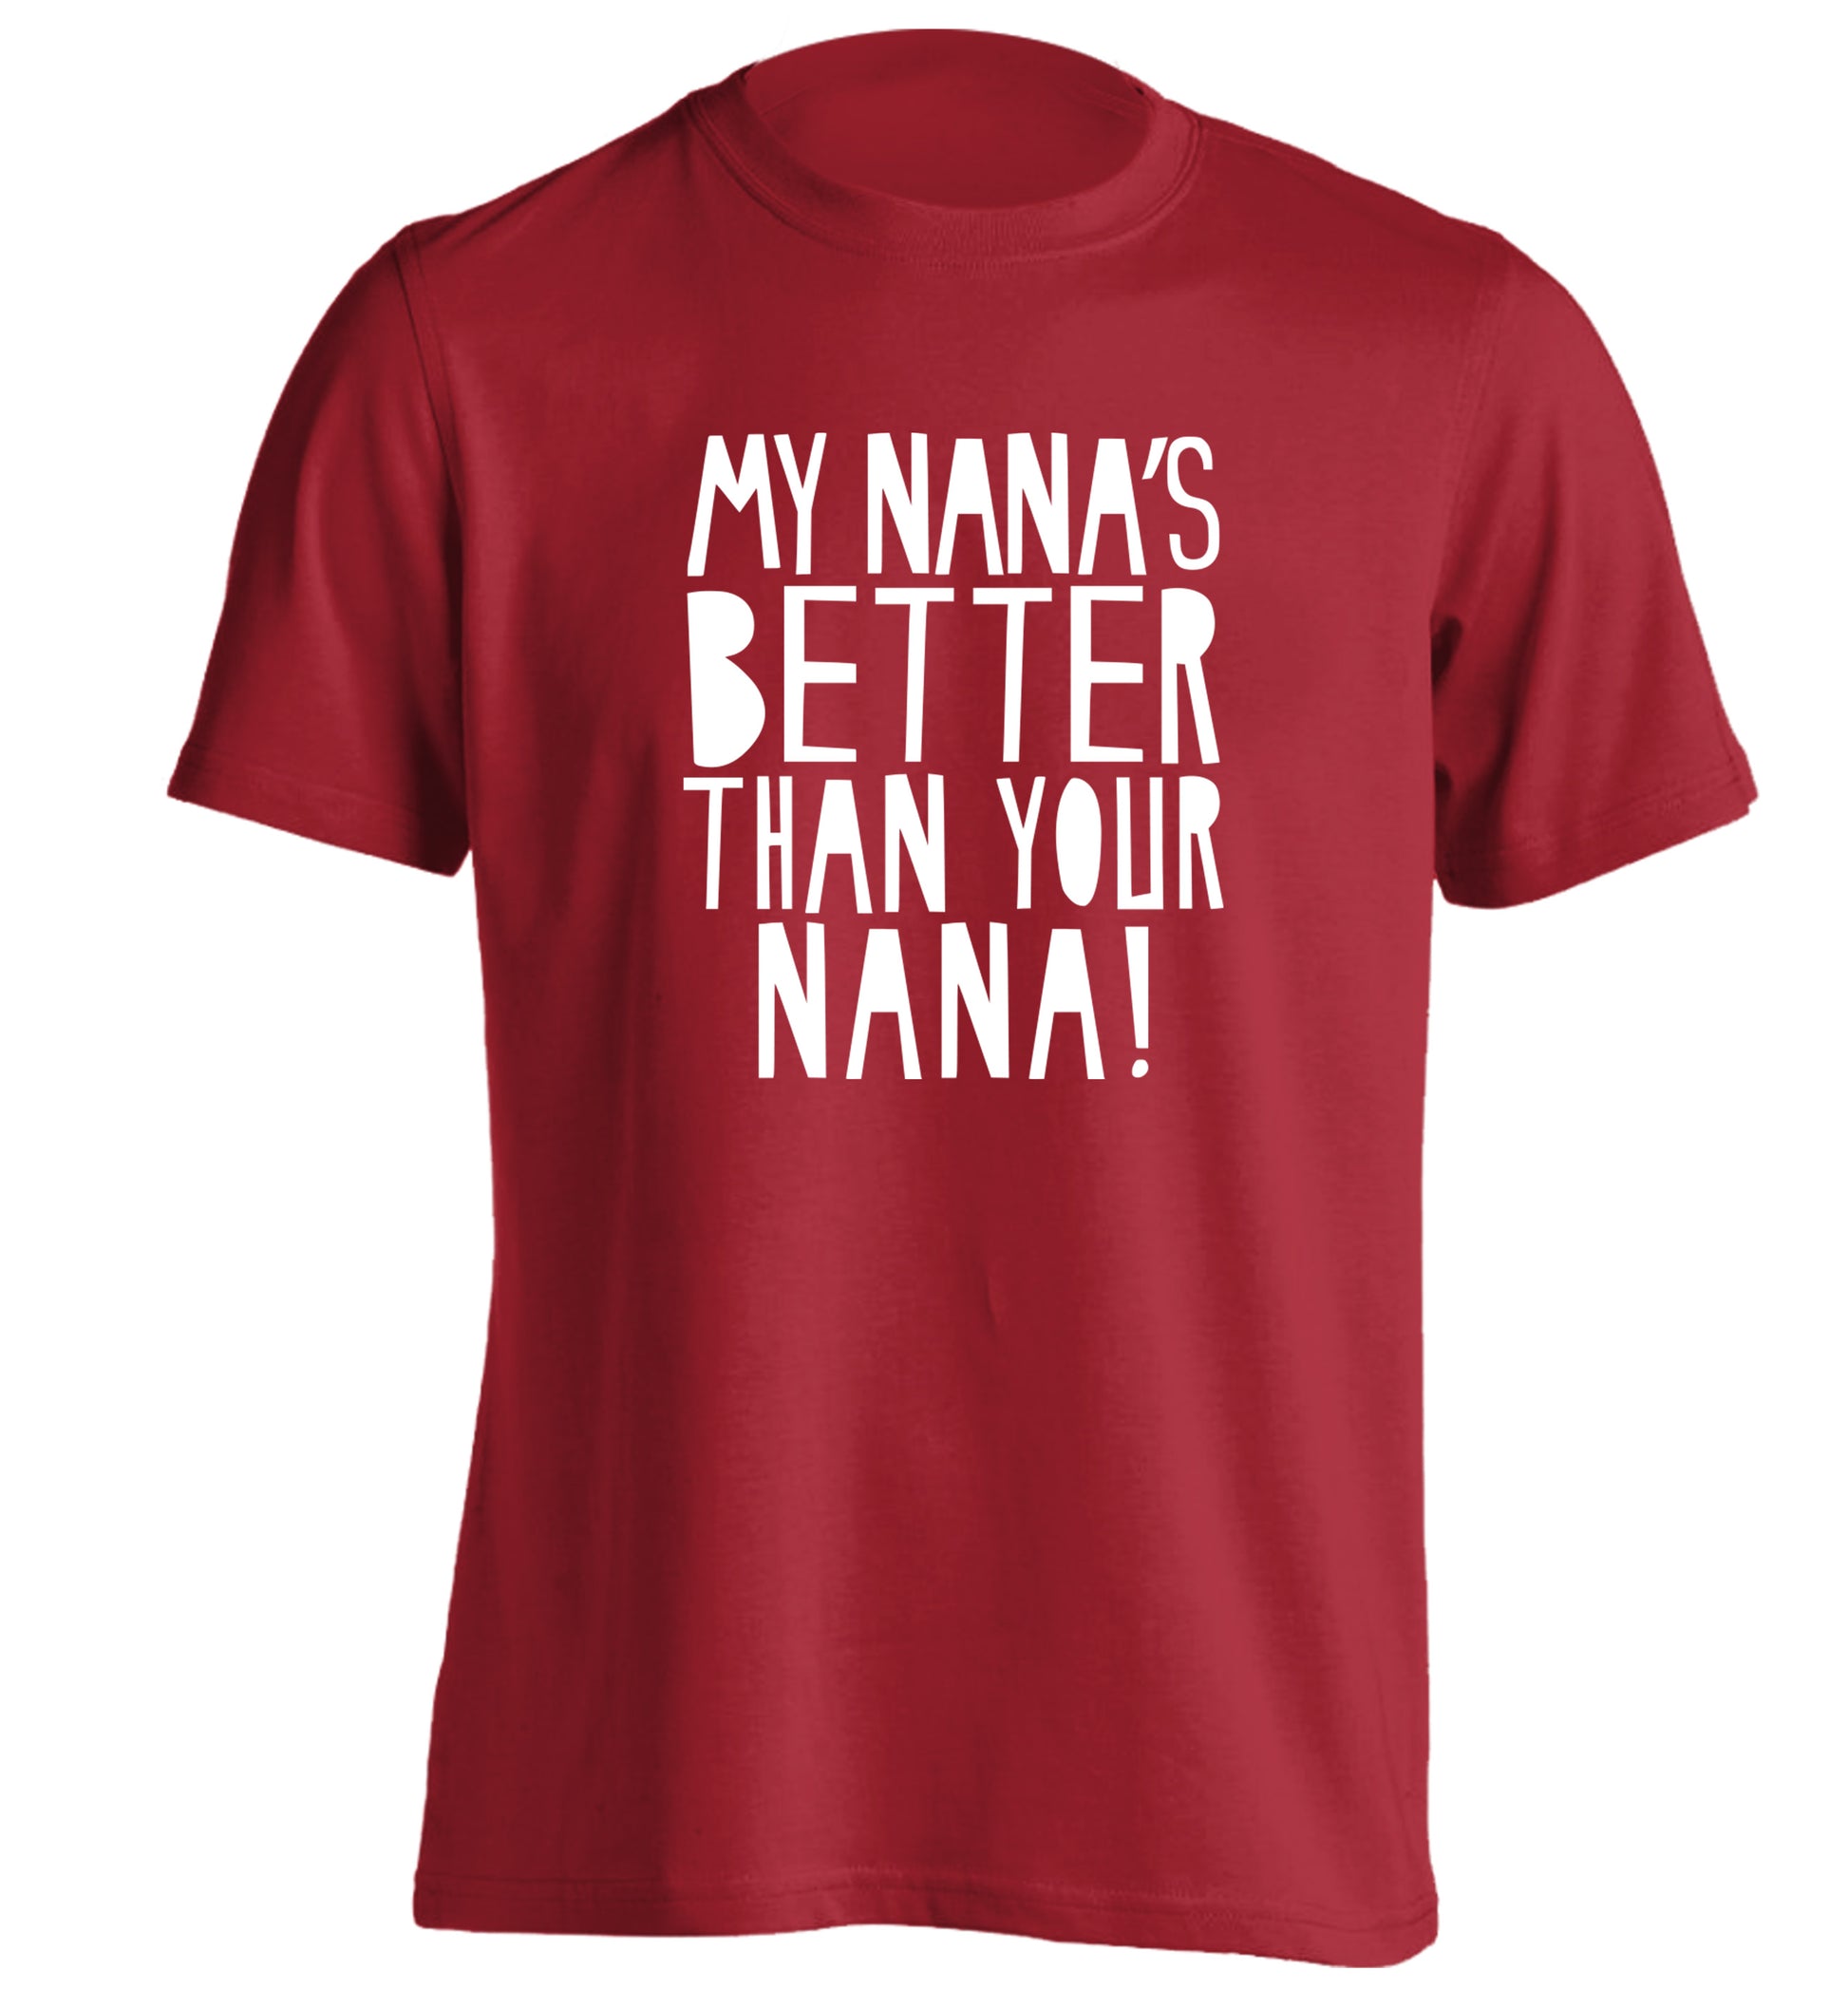 My nana's better than your nana adults unisex red Tshirt 2XL